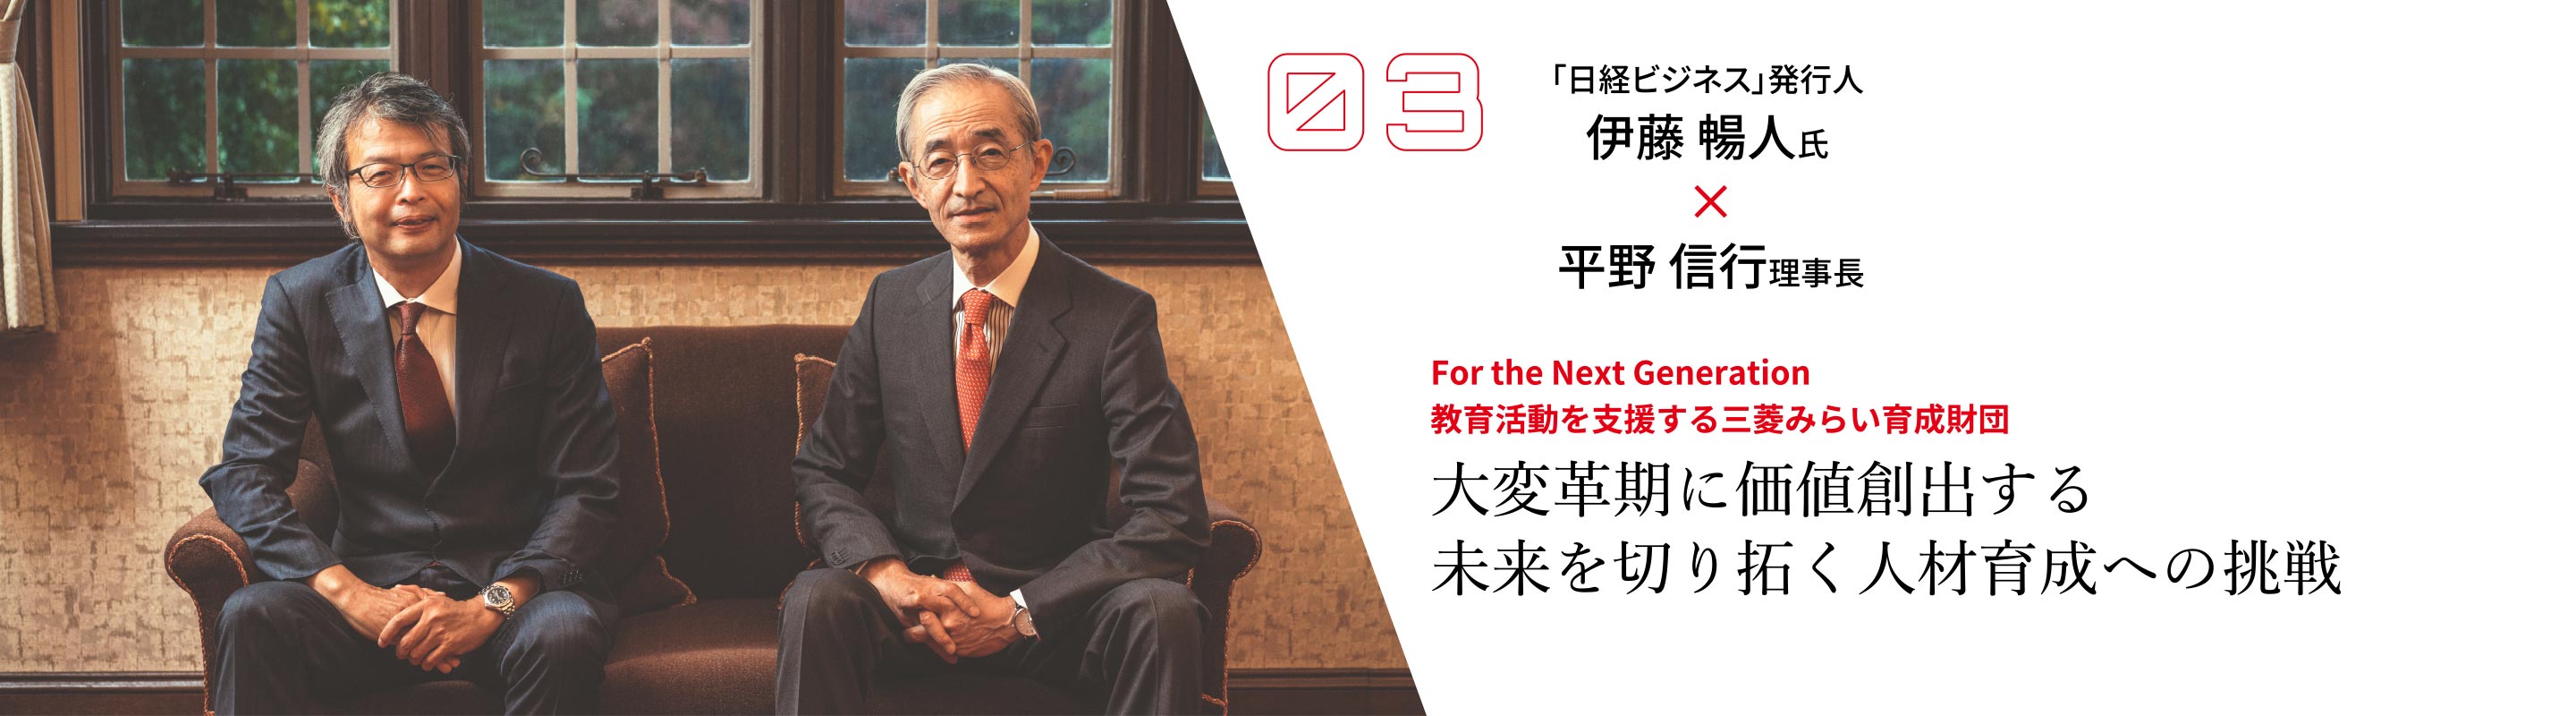 三菱みらい育成財団が目指す日本の未来への貢献